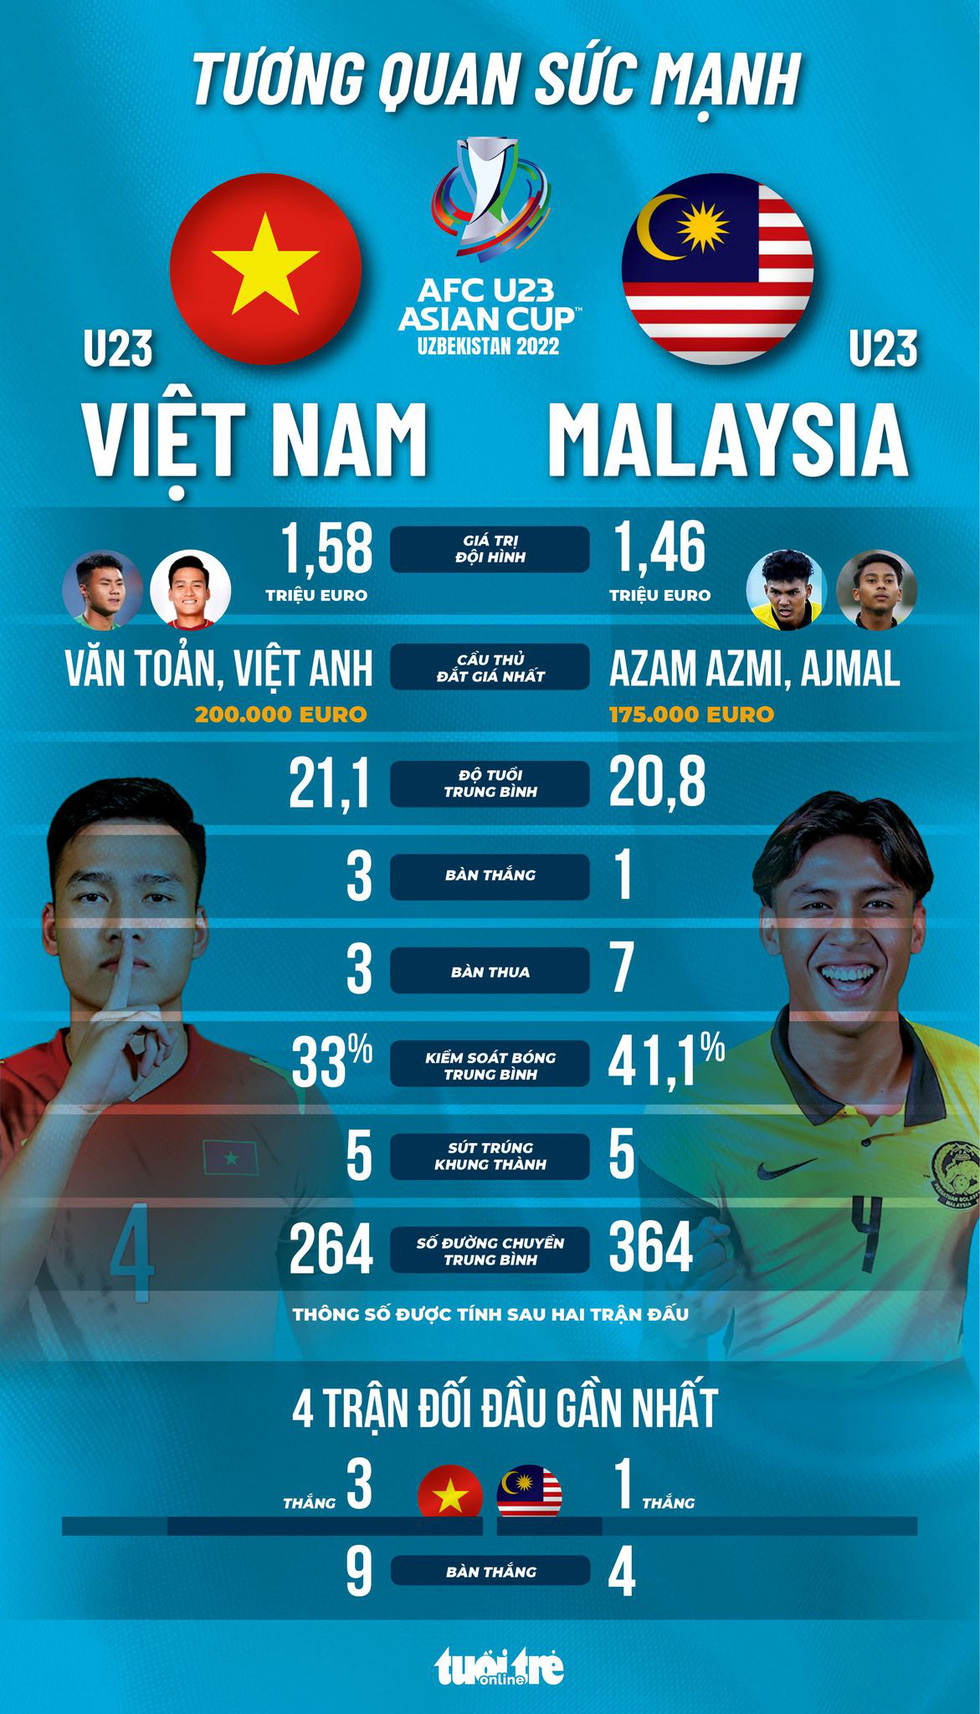 Tương quan sức mạnh giữa U23 Việt Nam và U23 Malaysia: Đối thủ nhỉnh hơn vài điểm - Ảnh 1.